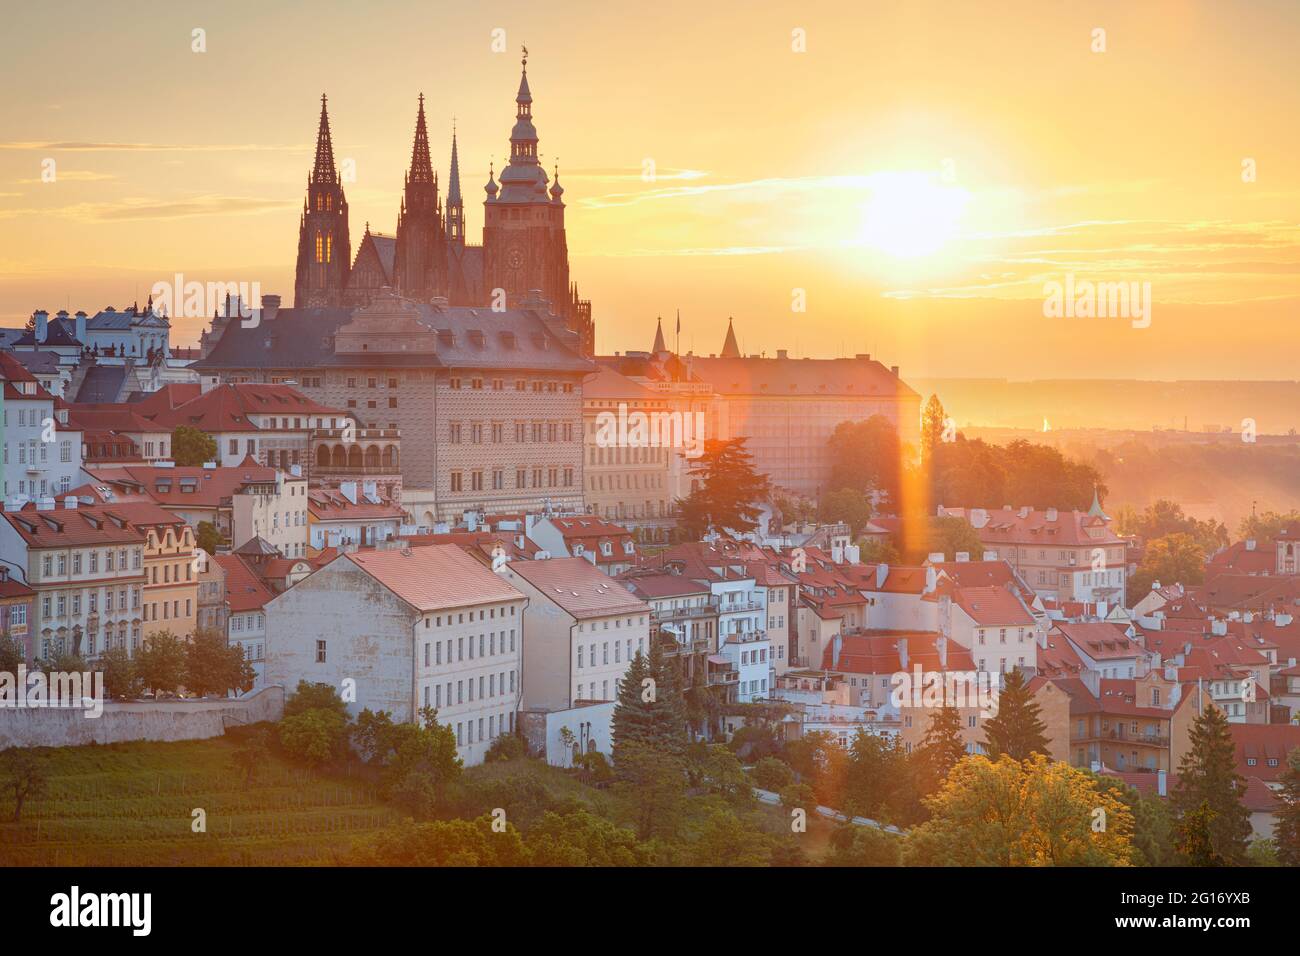 Château de Prague. Image de paysage urbain aérien de Prague, capitale de la République tchèque, avec la cathédrale Saint-Vitus et le quartier du château pendant le lever du soleil d'été. Banque D'Images